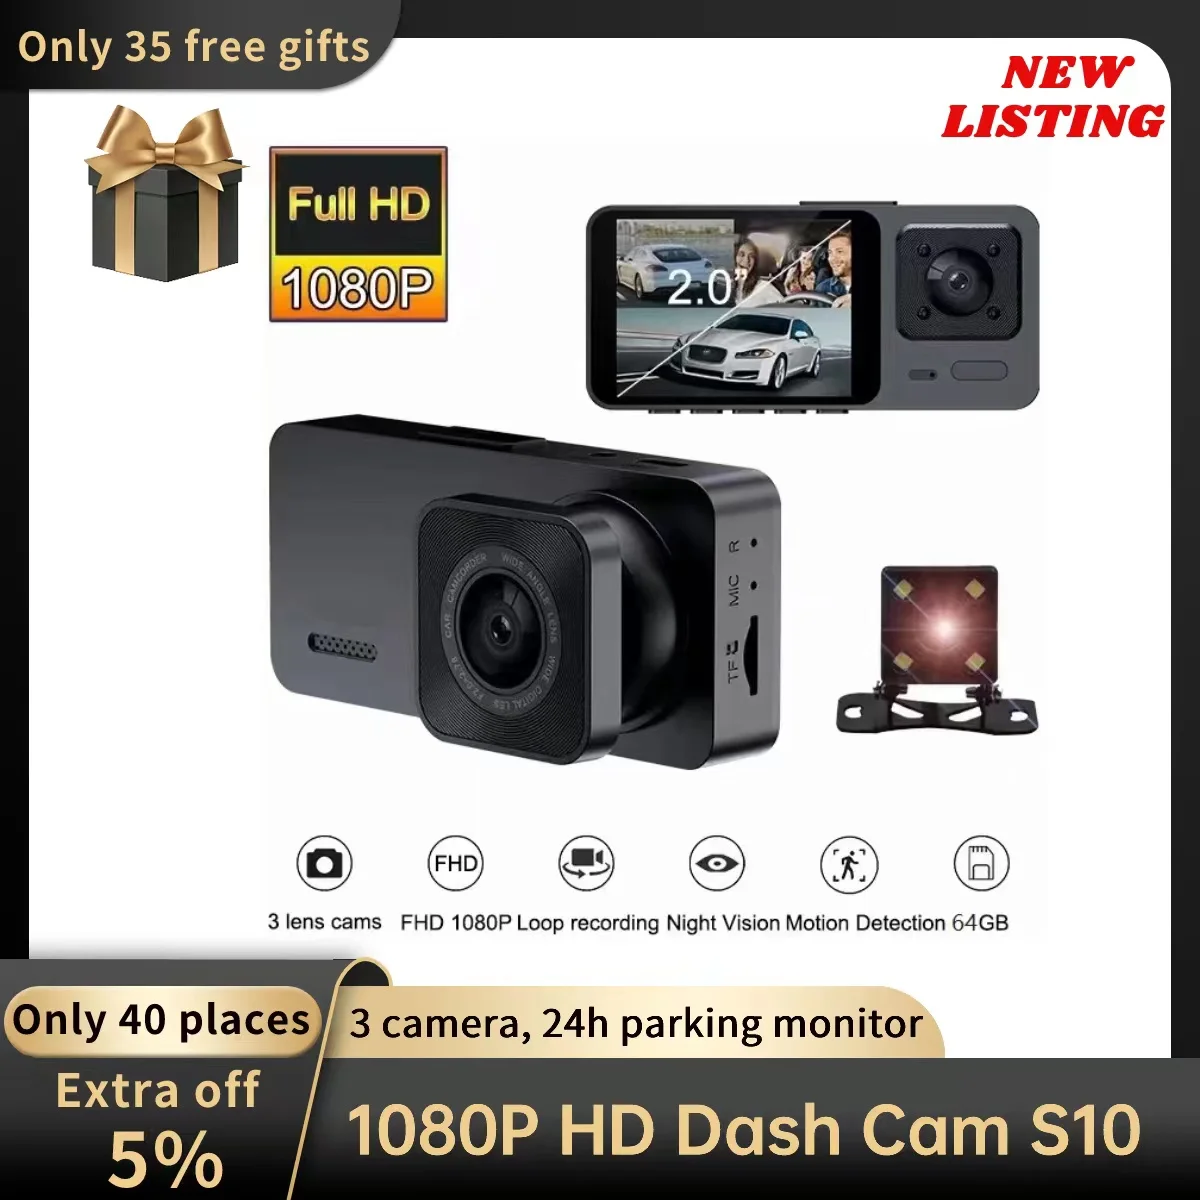 S10 Dash Cam For Car 1080P HD Dash Cam 3 Camera Motion Detection G-sensor Dashcam 24H Parking Monitor dvr 170°FOV Camera For Car